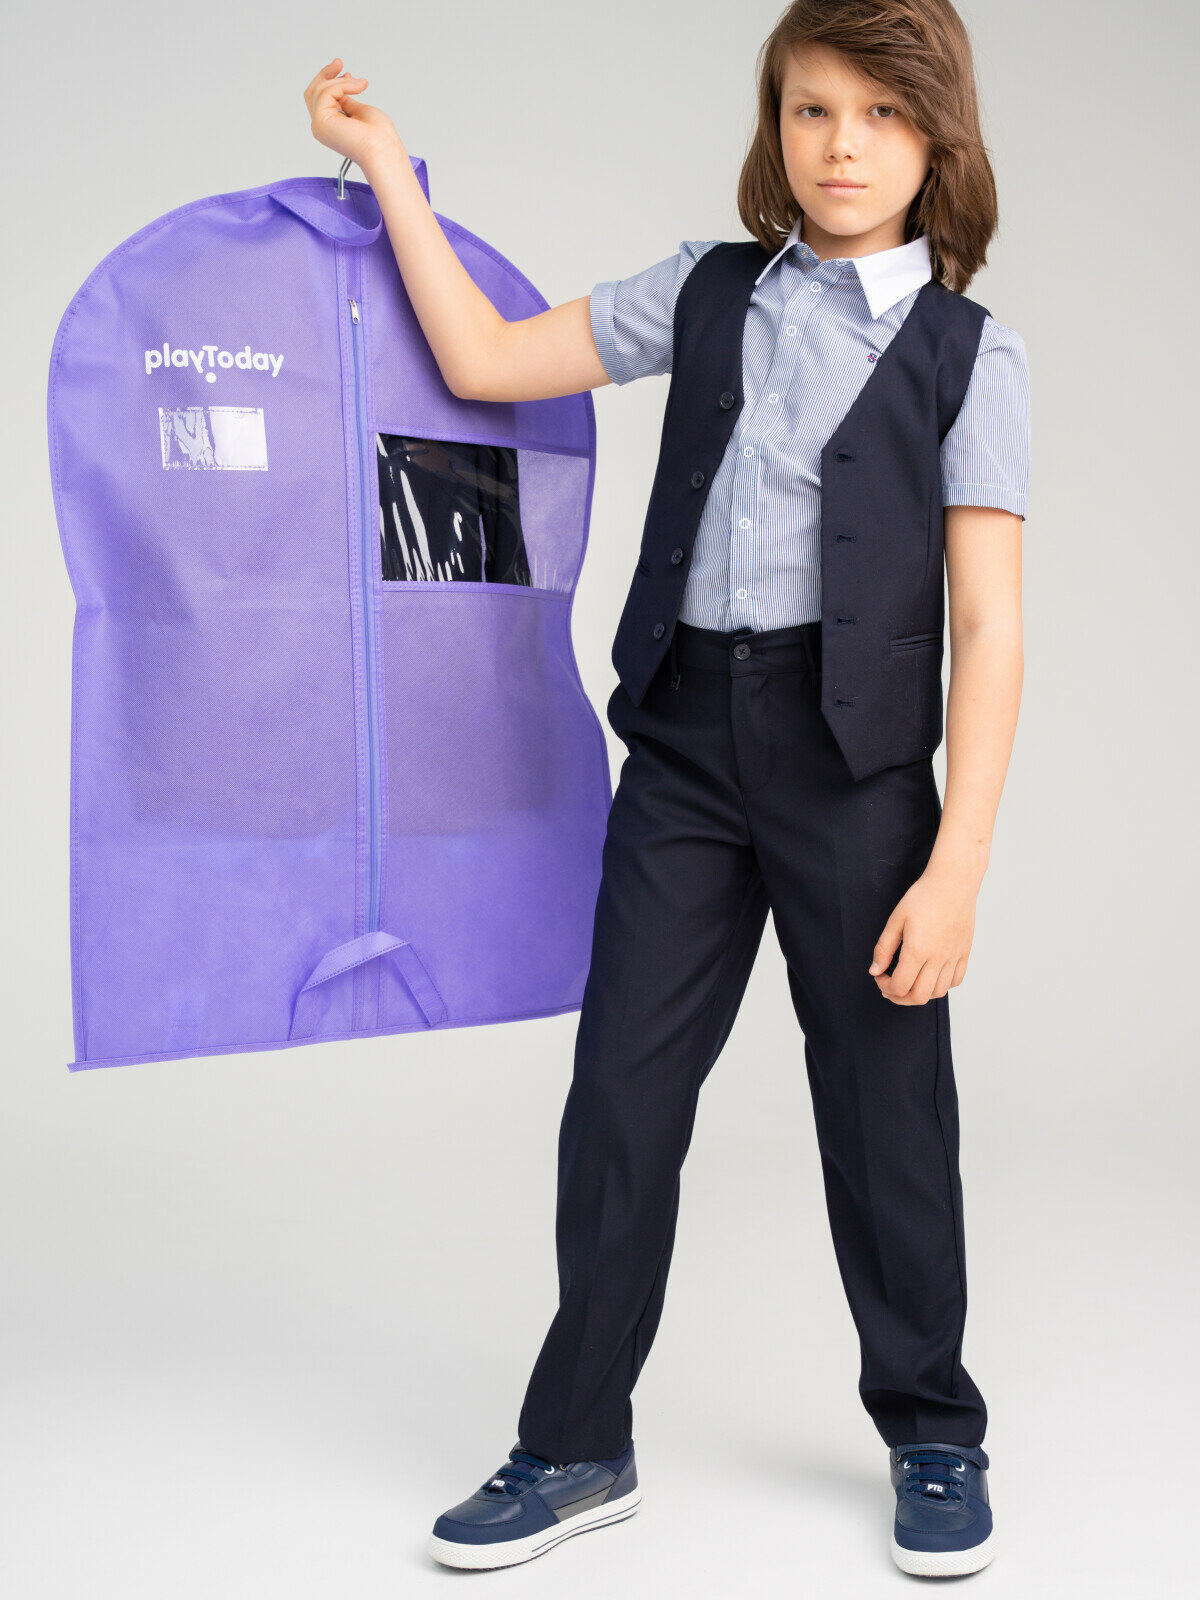 Чехол для одежды 85 см PlayToday, размер 85*60 см, фиолетовый